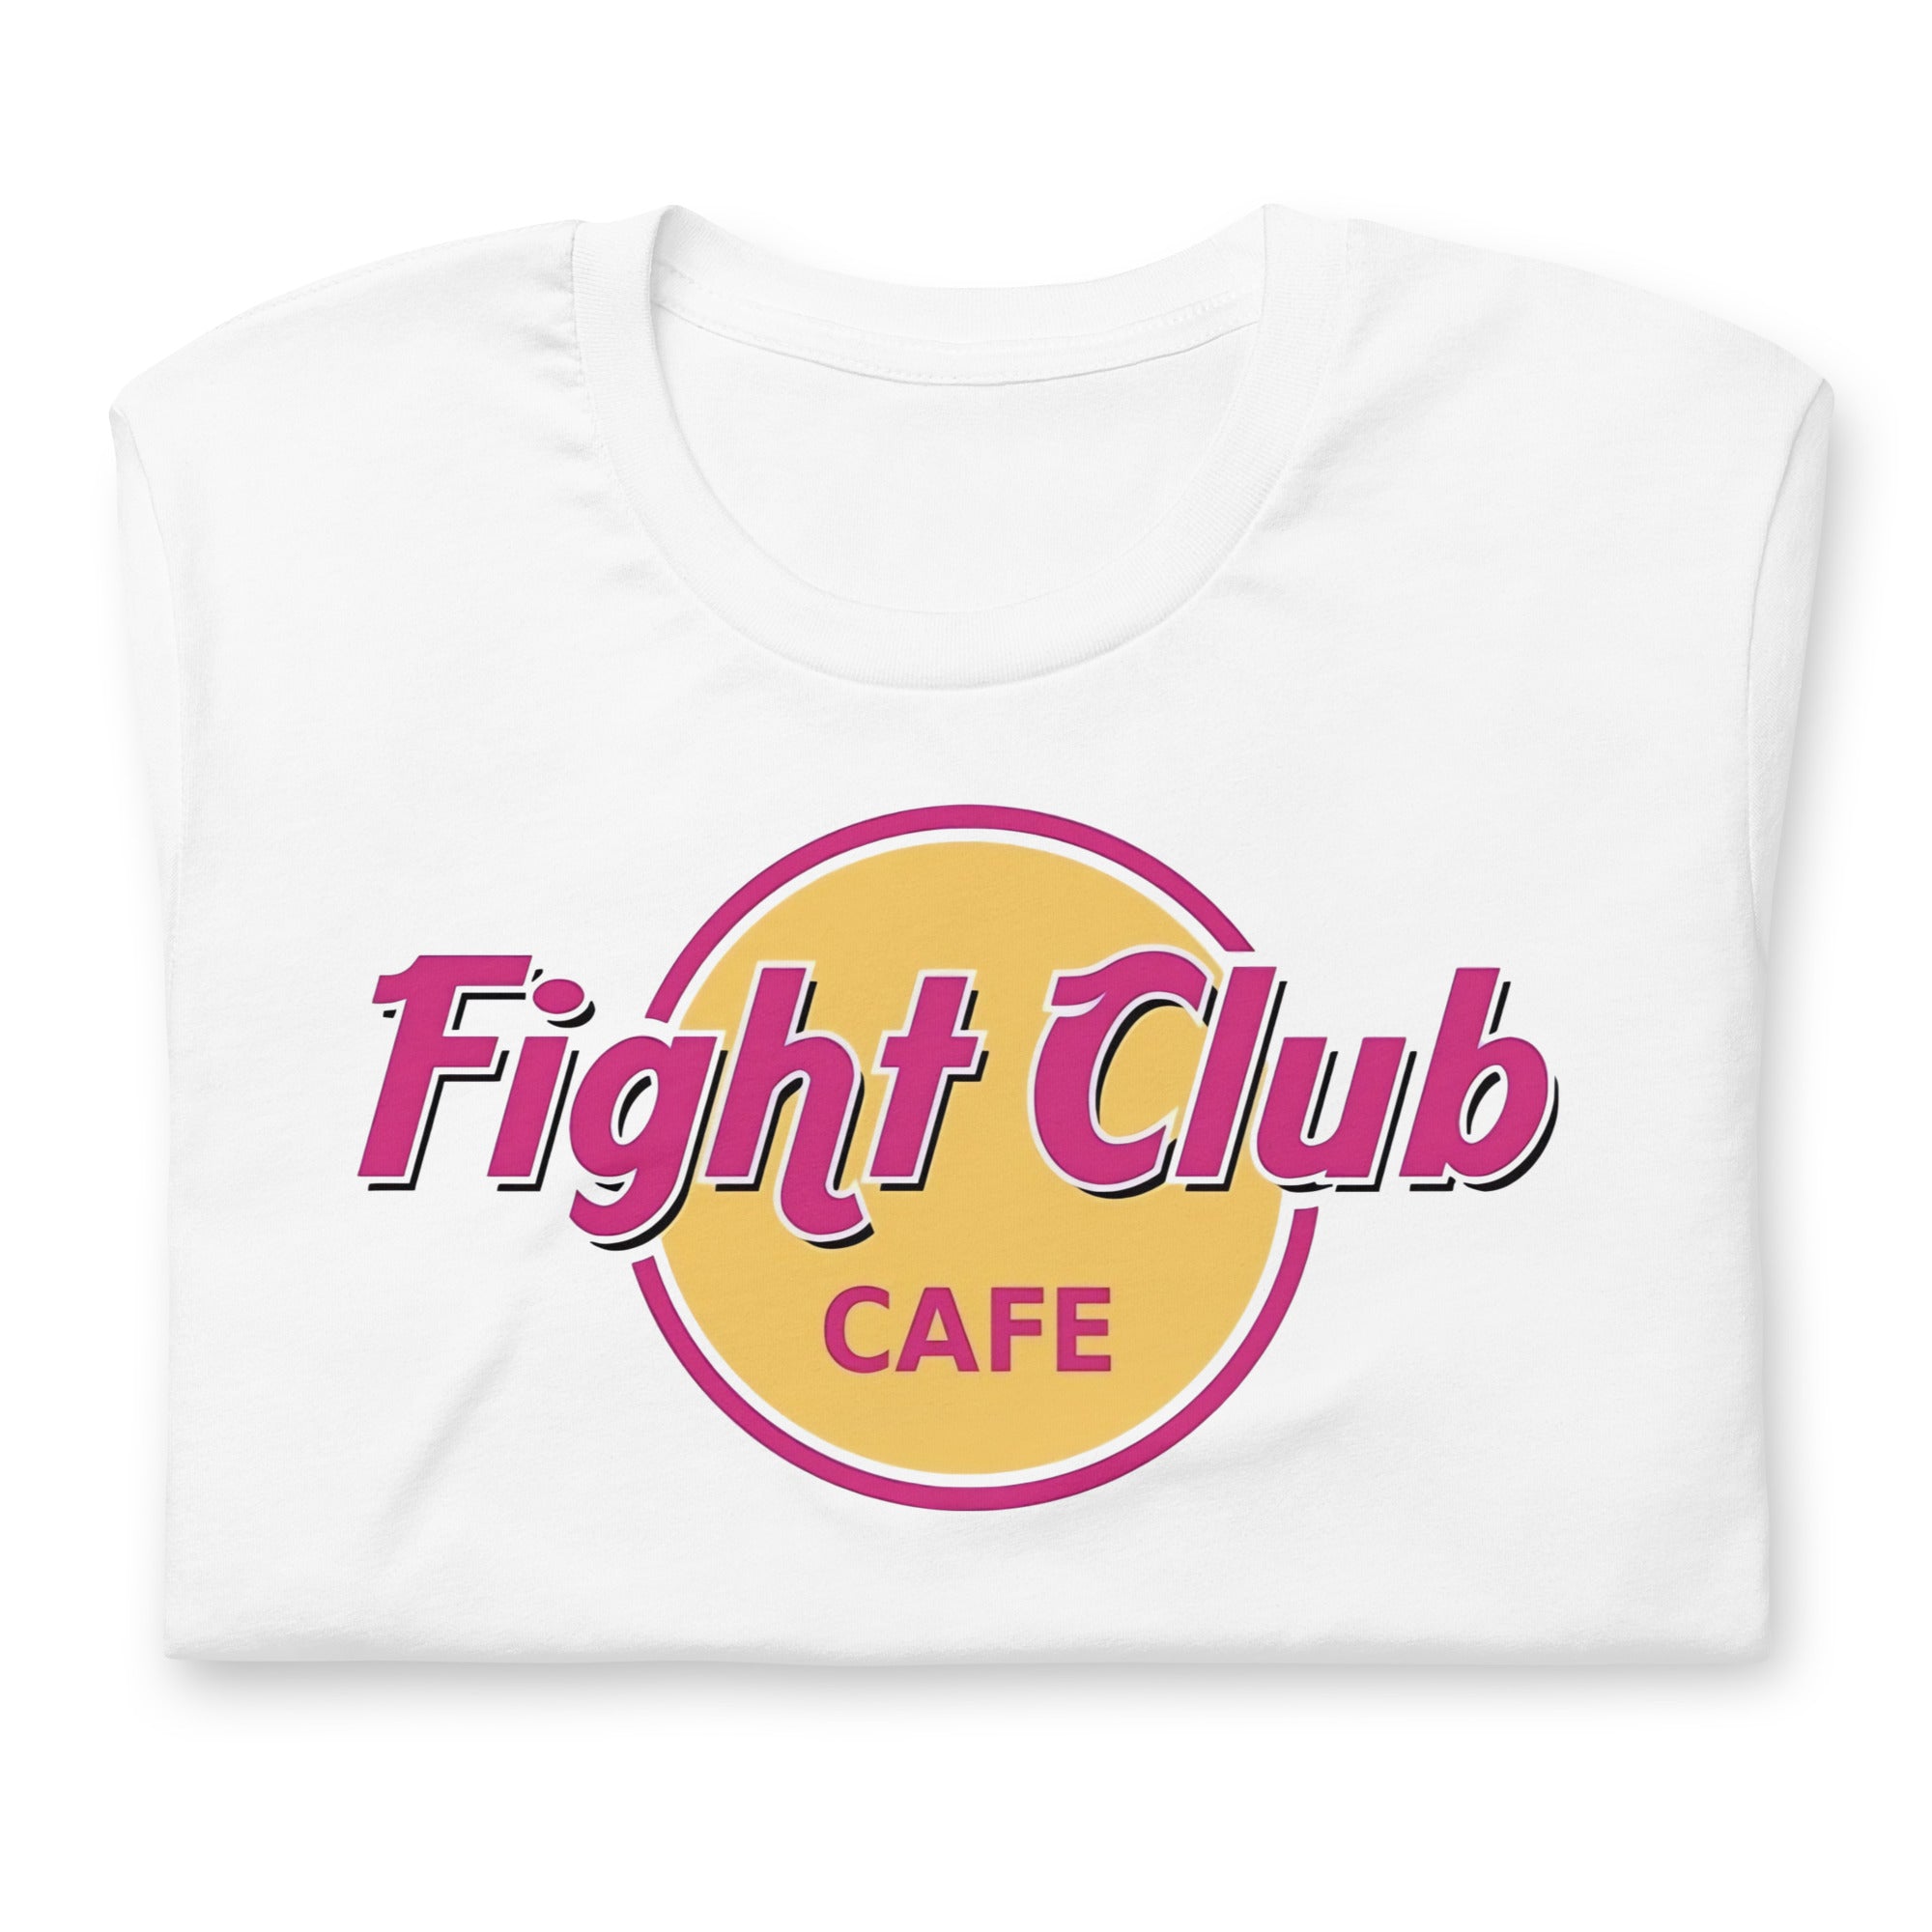 Camiseta Fight Club Café, Disponible en la mejor tienda online para comprar tu merch favorita, la mejor Calidad, compra Ahora en Superstar! 